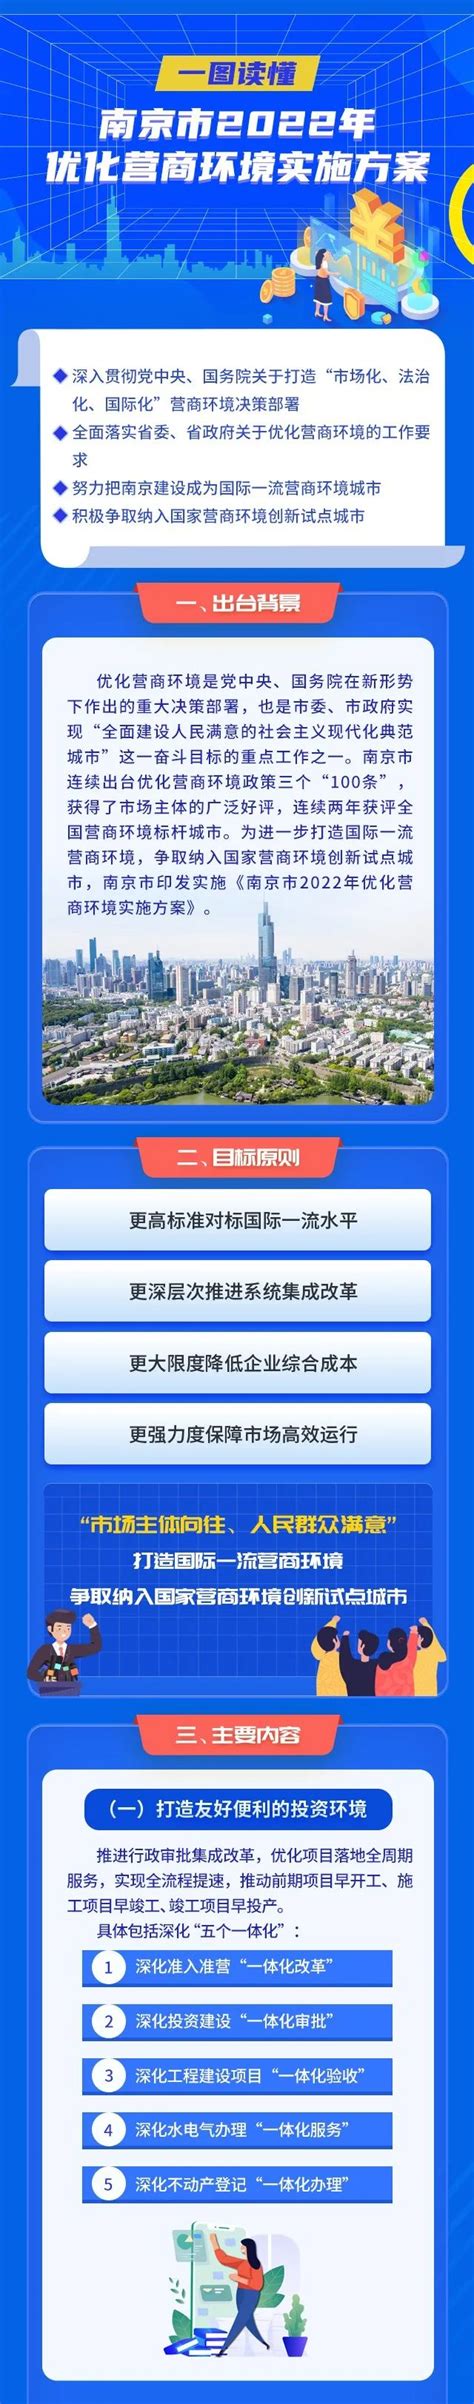 南京市鼓楼区人民政府 一图读懂丨南京市2022年优化营商环境实施方案